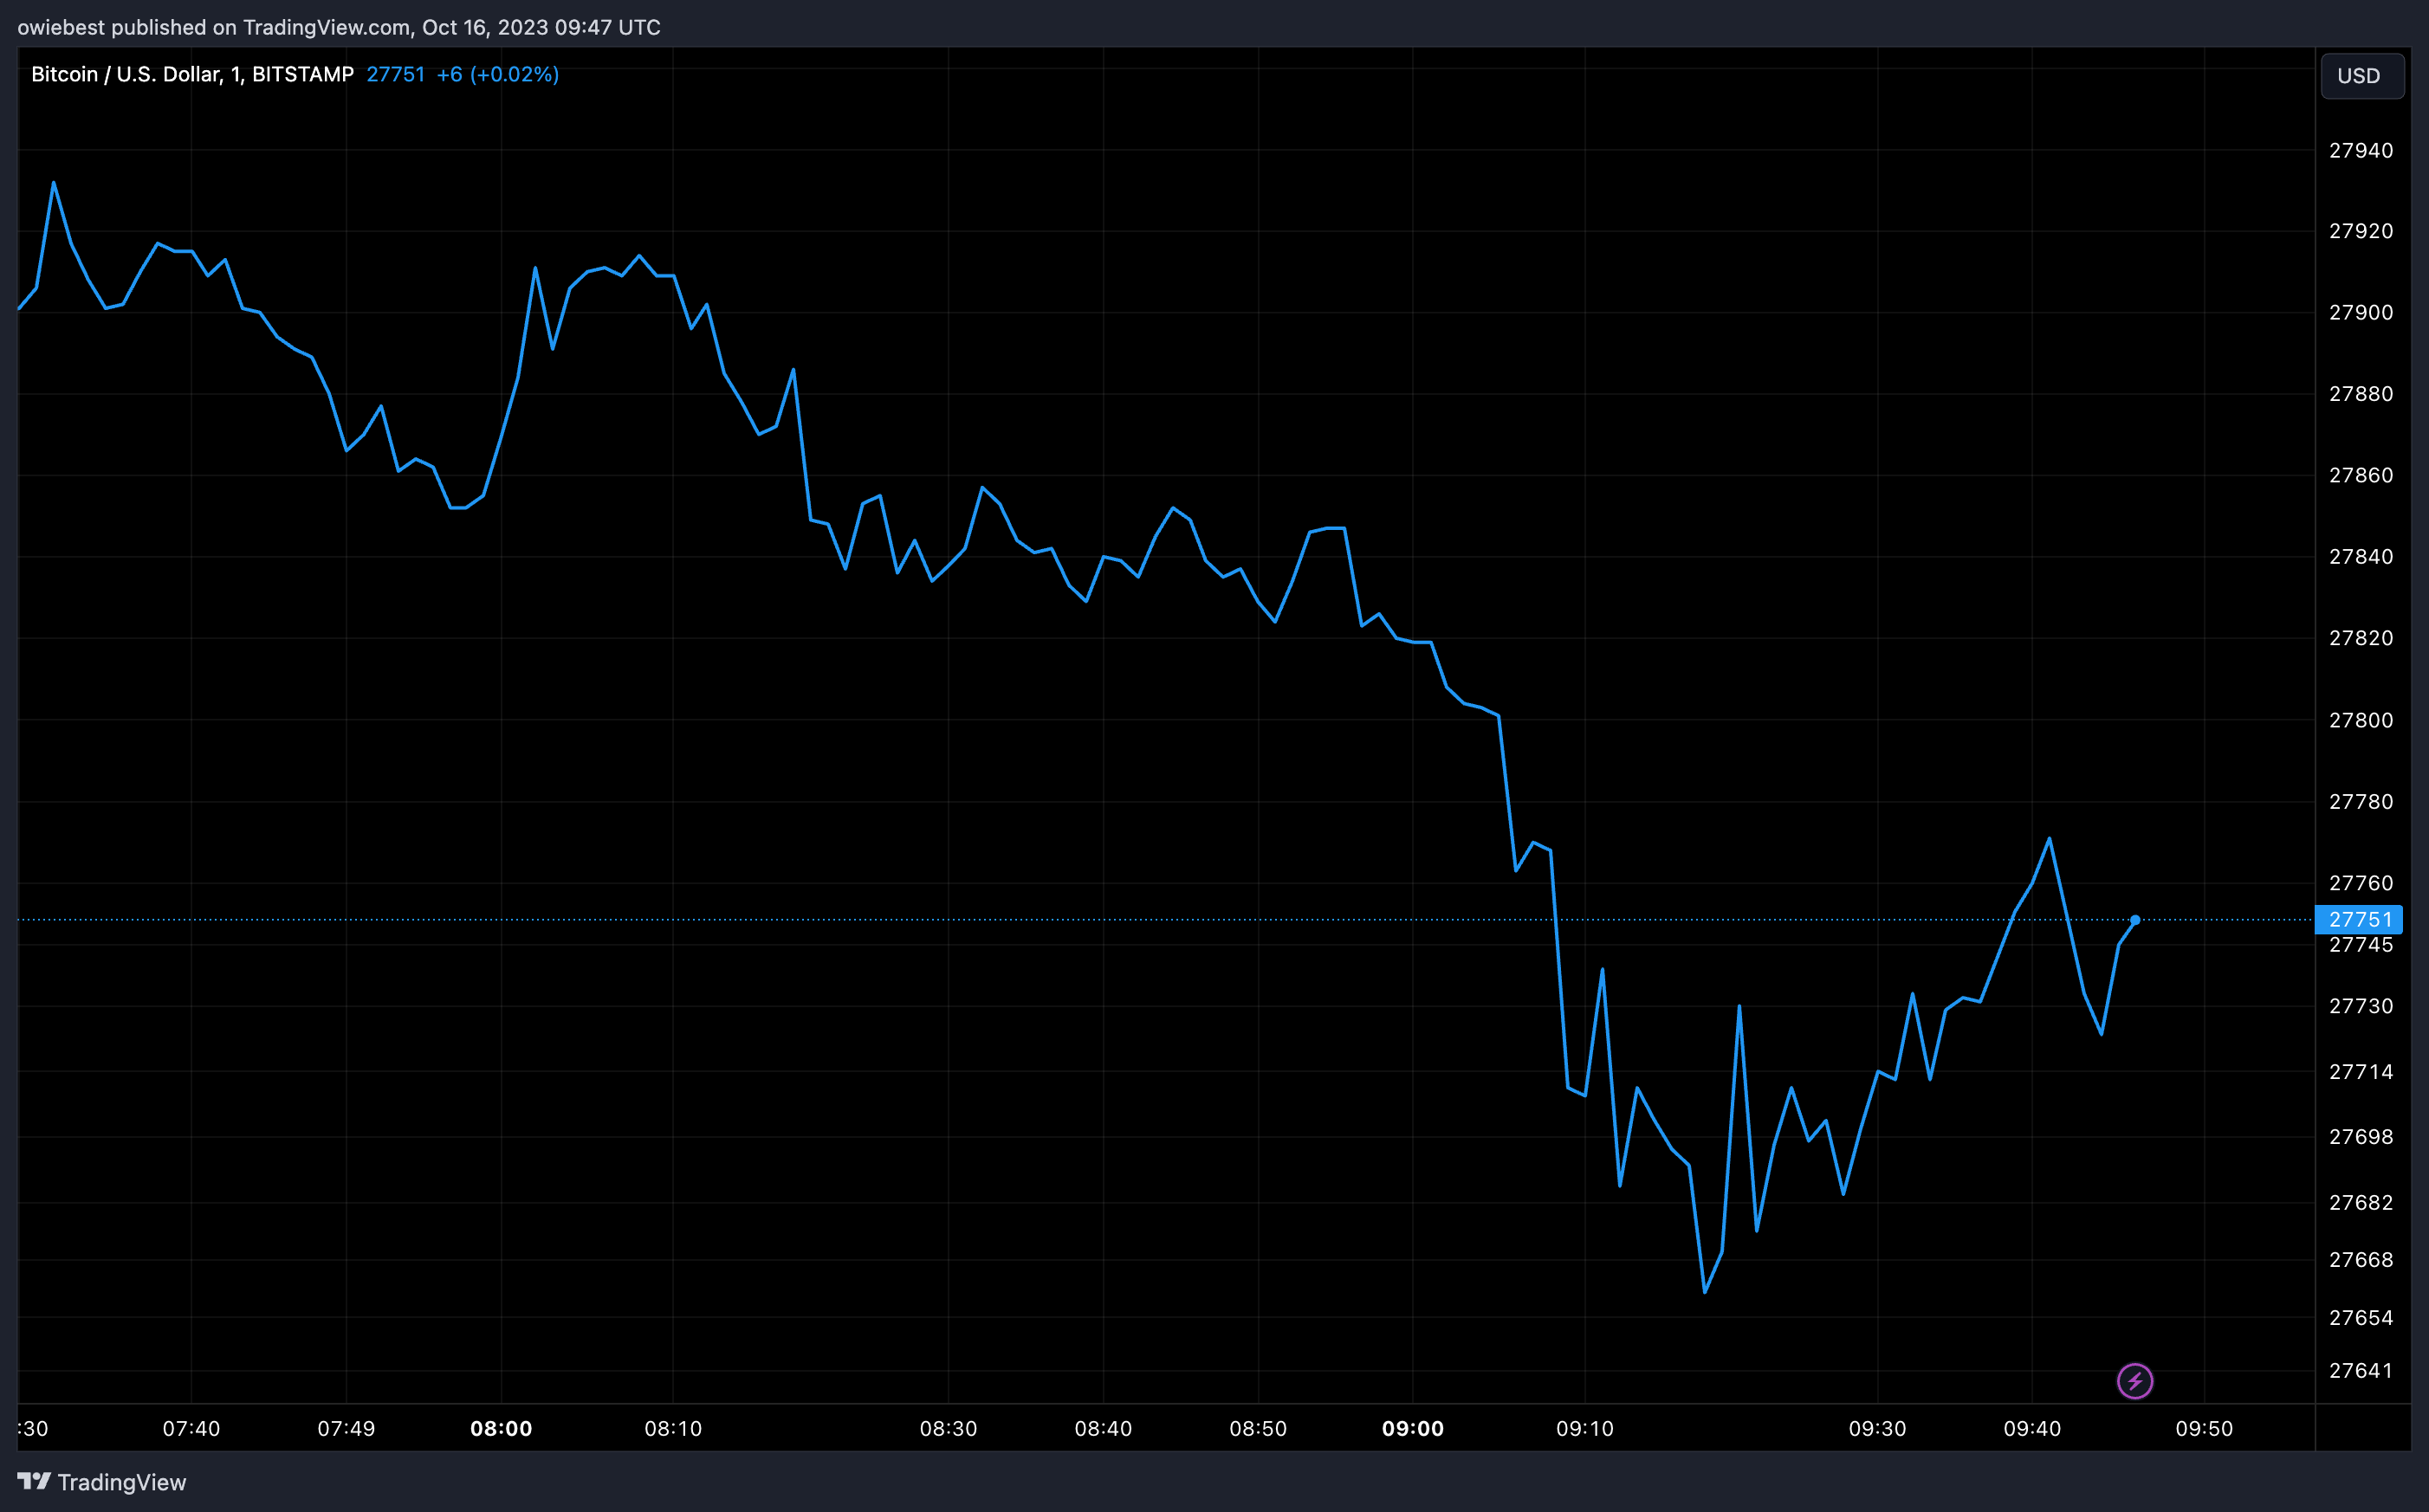 График цен на биткоин от Tradingview.com (майннинг хешрейта)